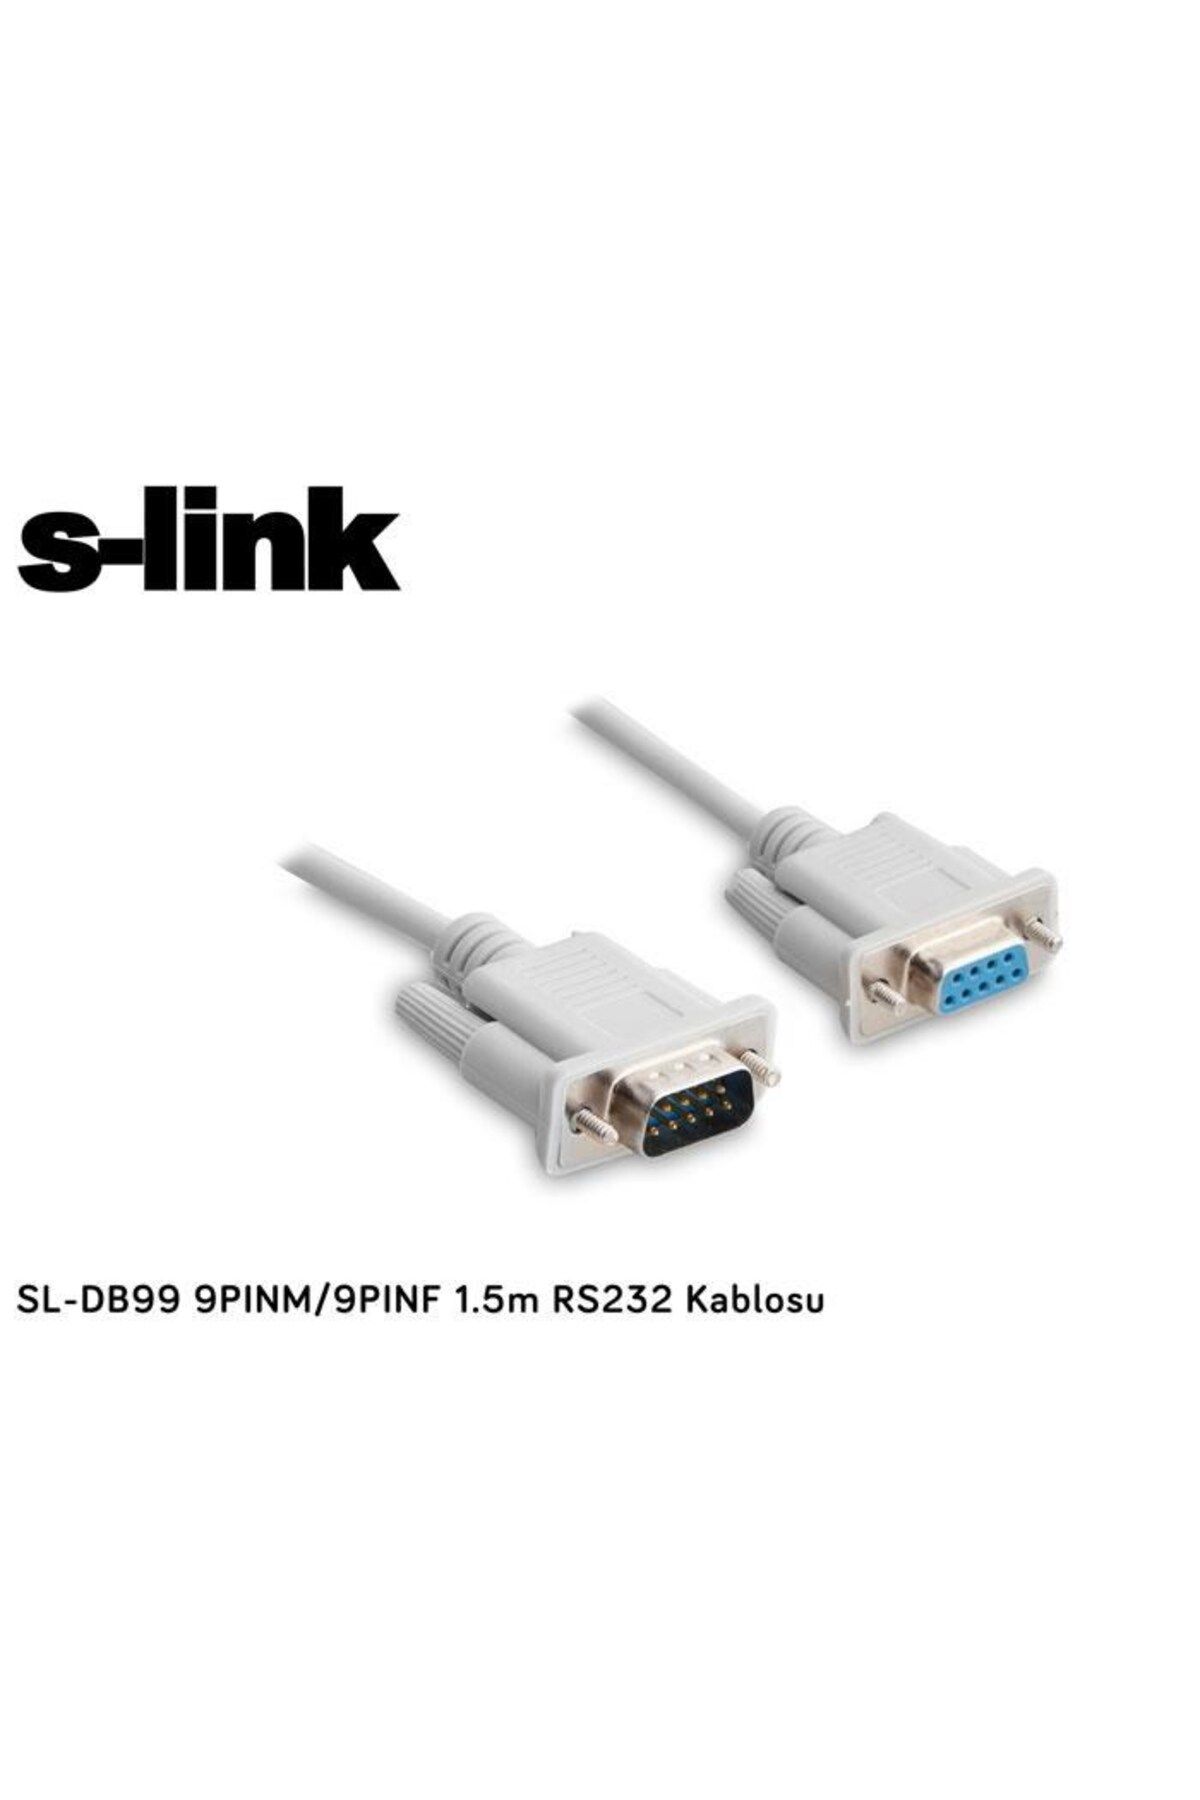 Retro S-Link Sl-Db99 9Pinm/9Pinf 1.5M Rs232  Kablo u